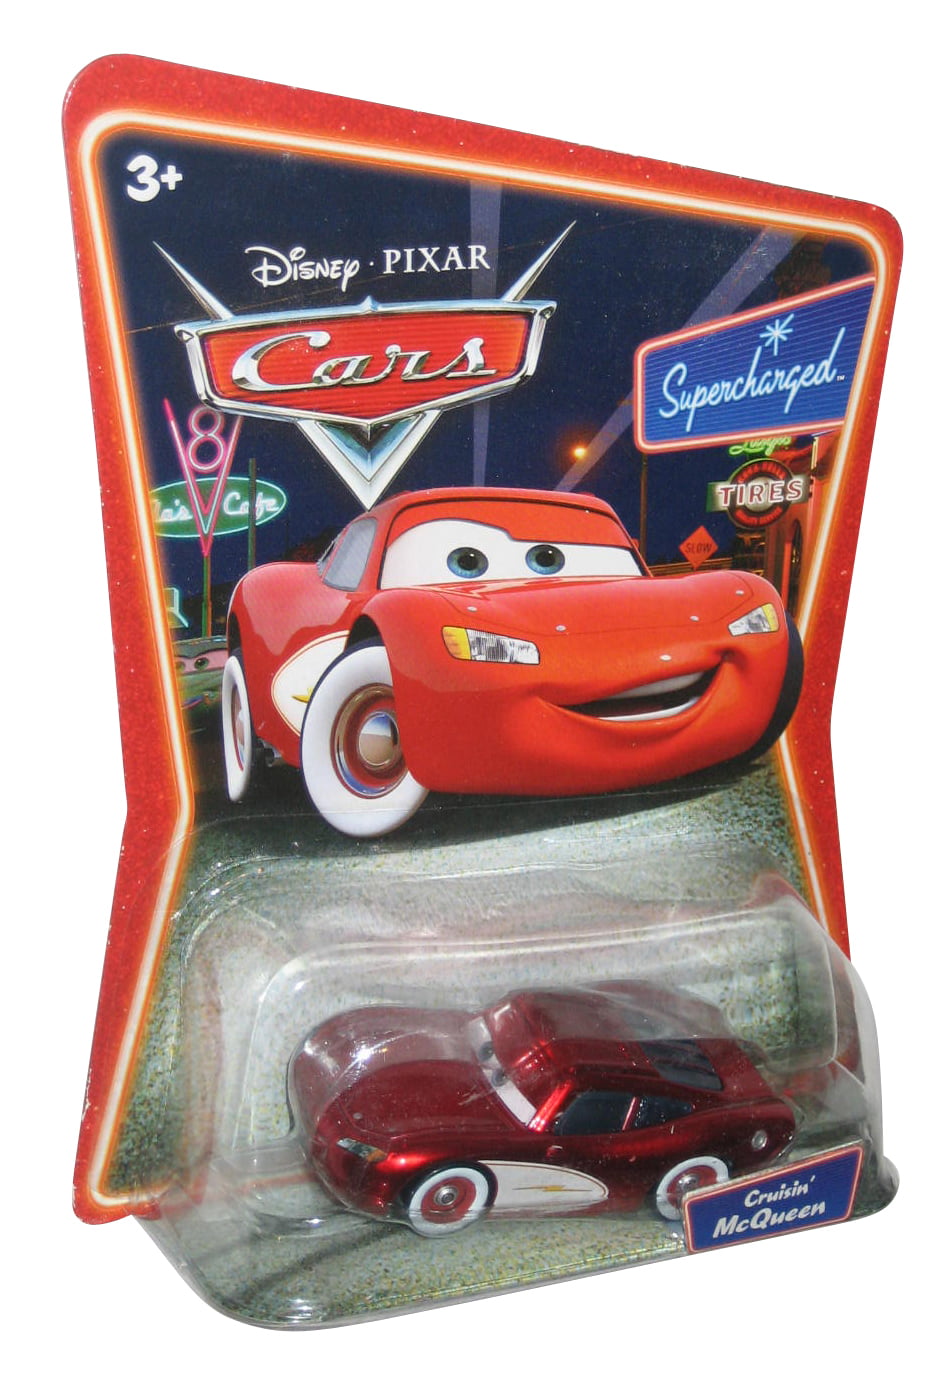 2007 Mattel Disney Pixar Cars SAETTA BLING BLING McQUEEN Lightning MOC 